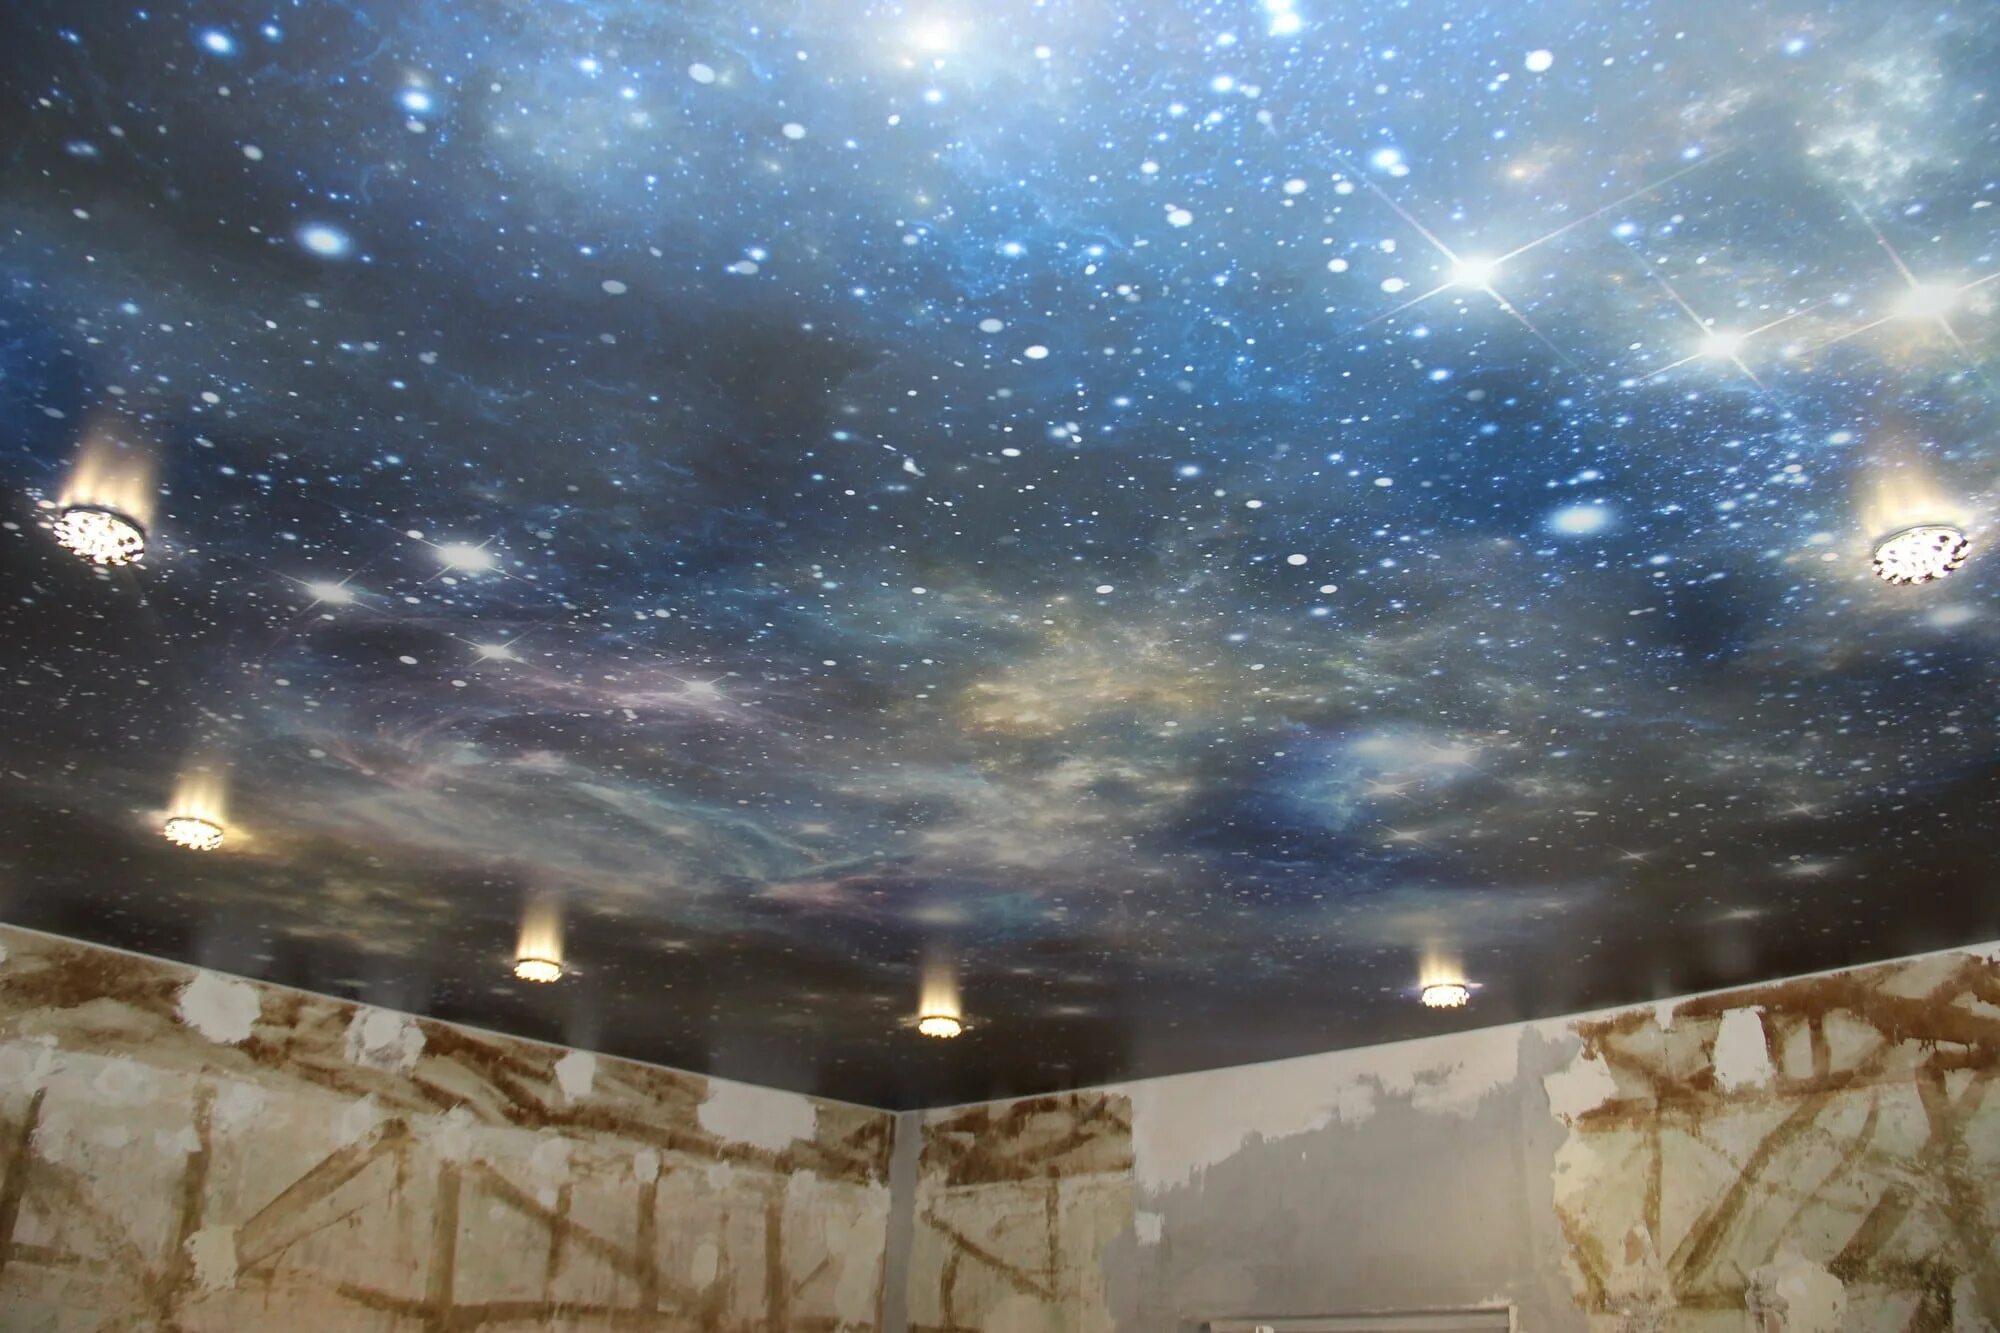 Натяжной потолок звездное небо. Натяжной потолок в виде космоса. Натяжной потолок с фотопечатью звездное небо. Натяжной потолок с фотопечатью космос. Потолки невесомость